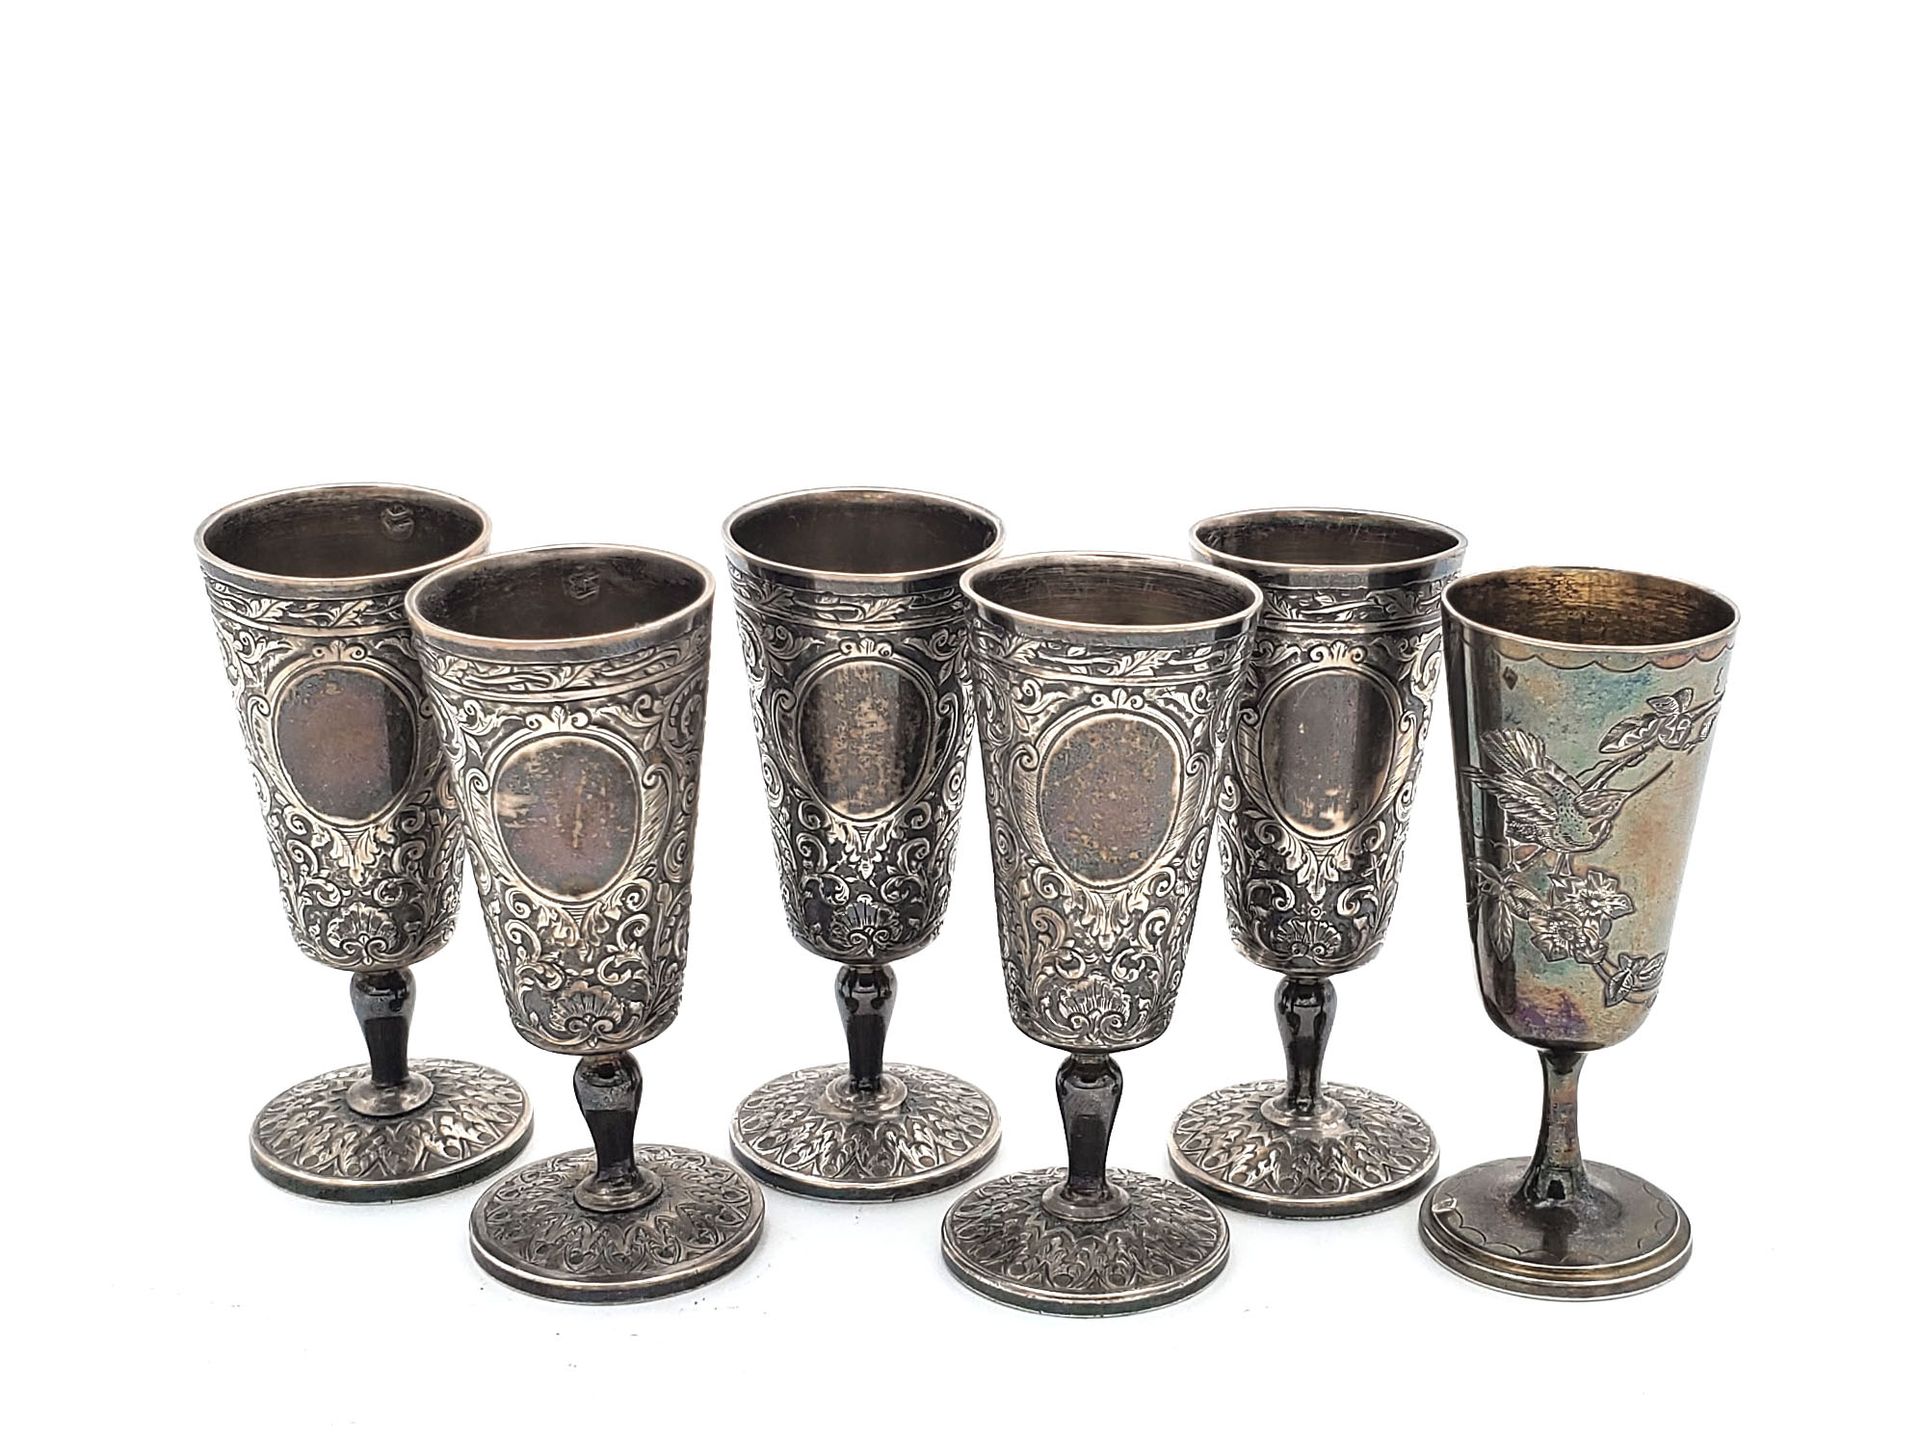 Null 俄罗斯风格的五件银质酒瓶组，其托盘上刻有图案。19世纪末，20世纪初。附上一个类似型号的高脚杯。重量245克，高8厘米